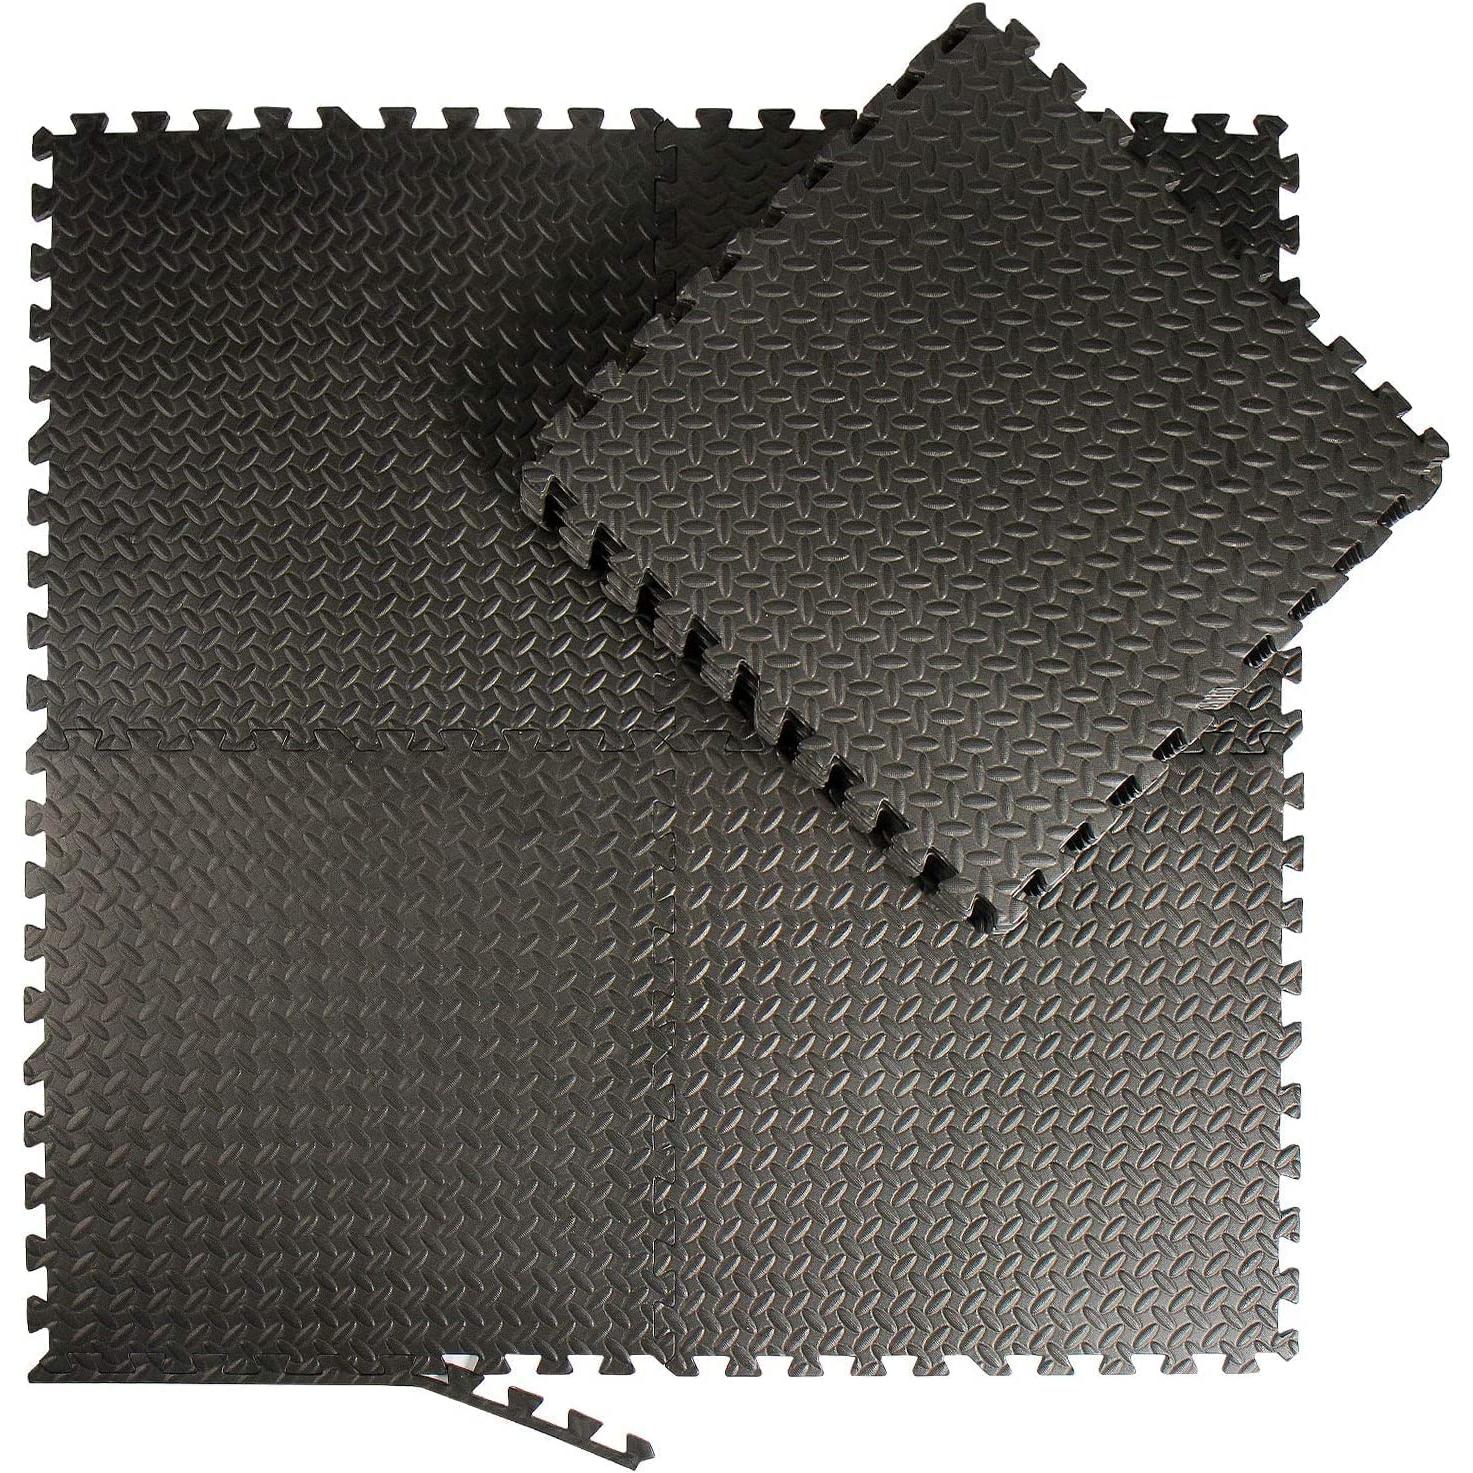 Esterilla de suelo con 12 piezas de goma eva que cubre un área de 4,32